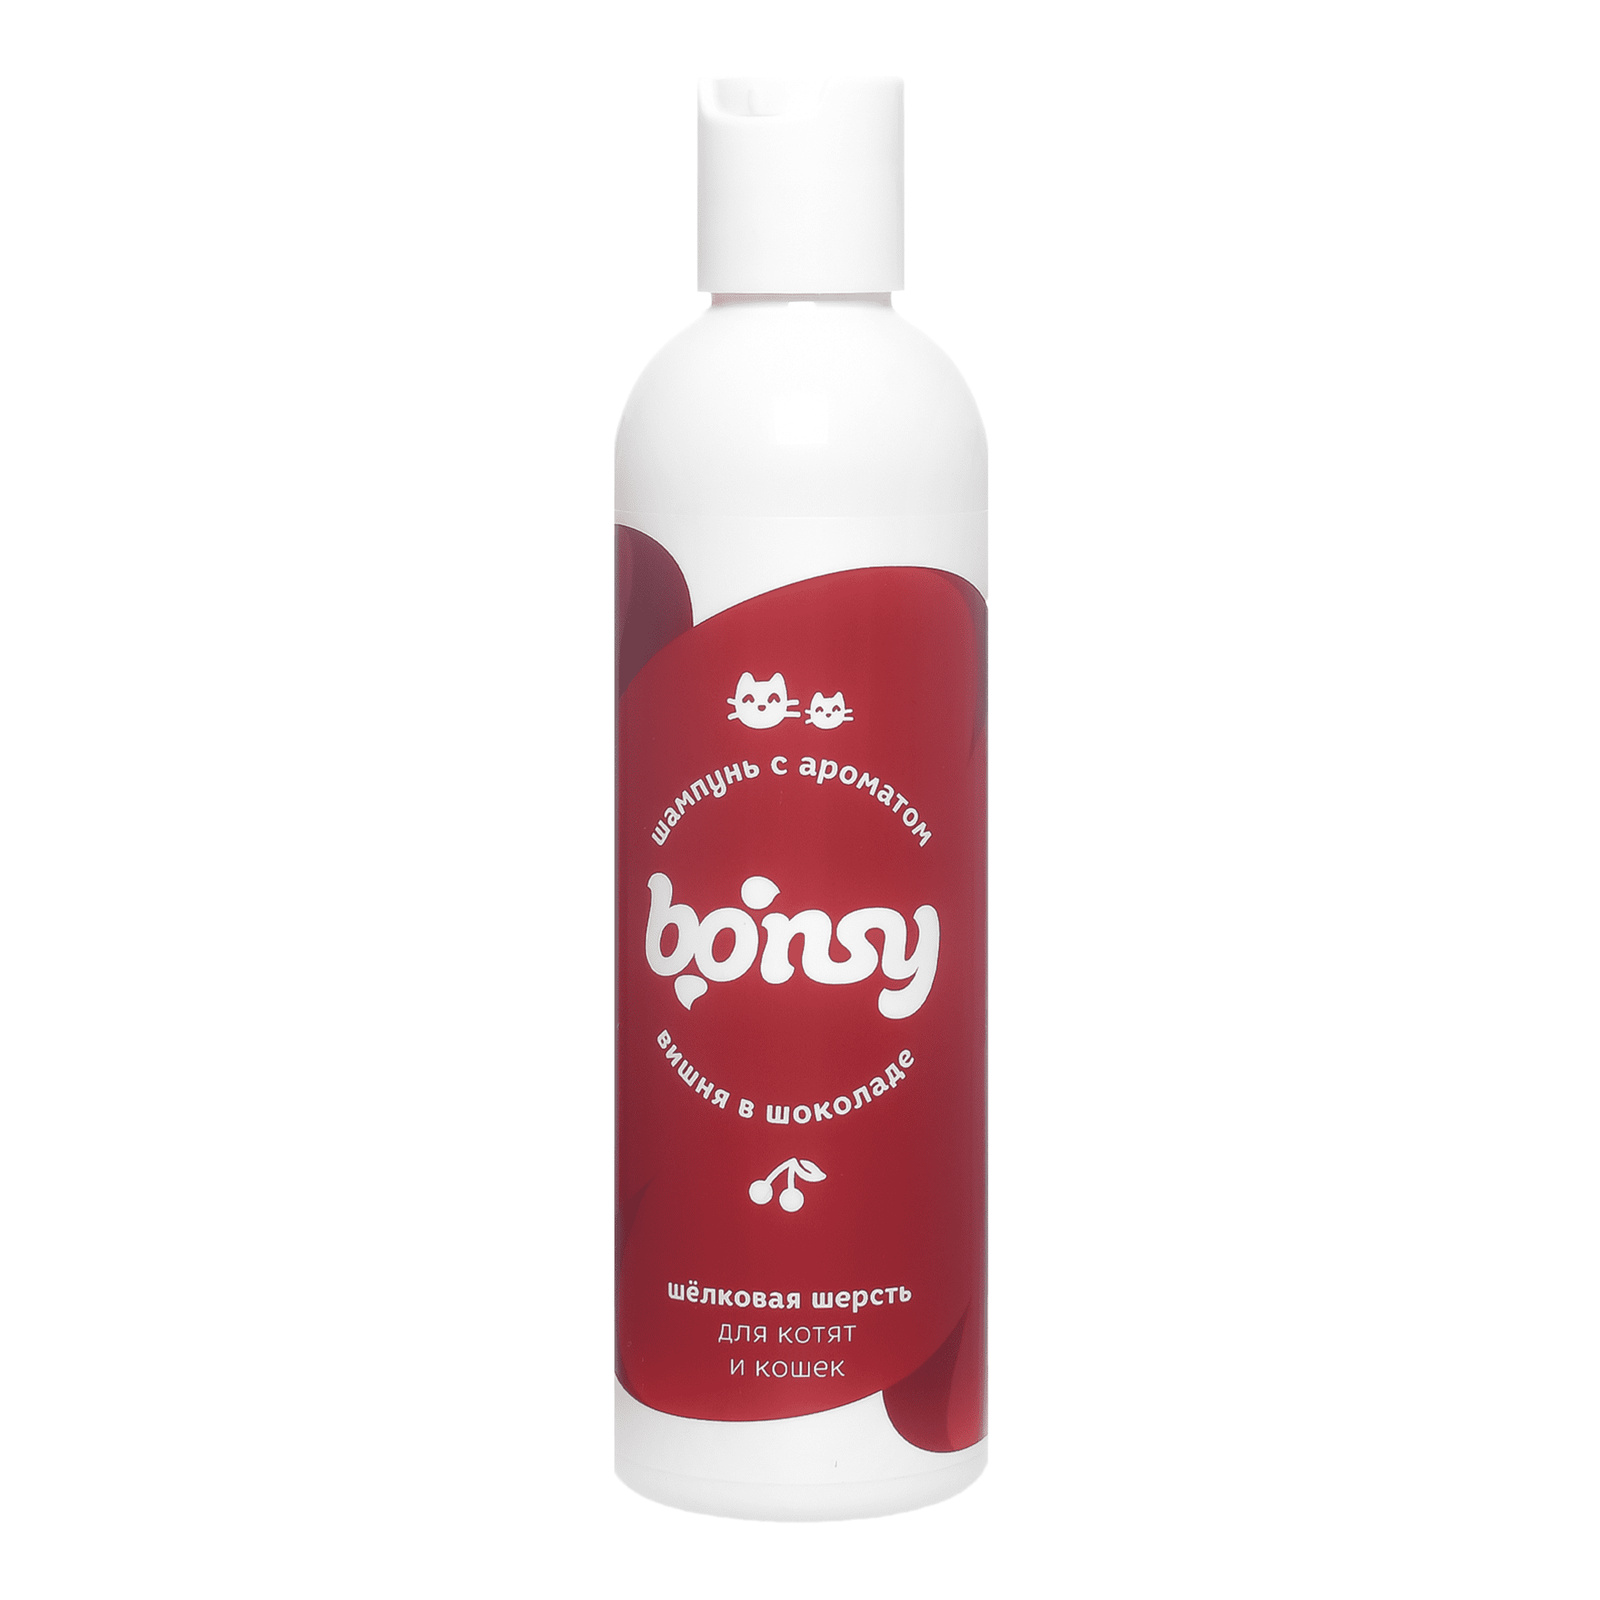 Bonsy Bonsy шампунь с ароматом вишня в шоколаде для шелковой шерсти котят и кошек (250 г)